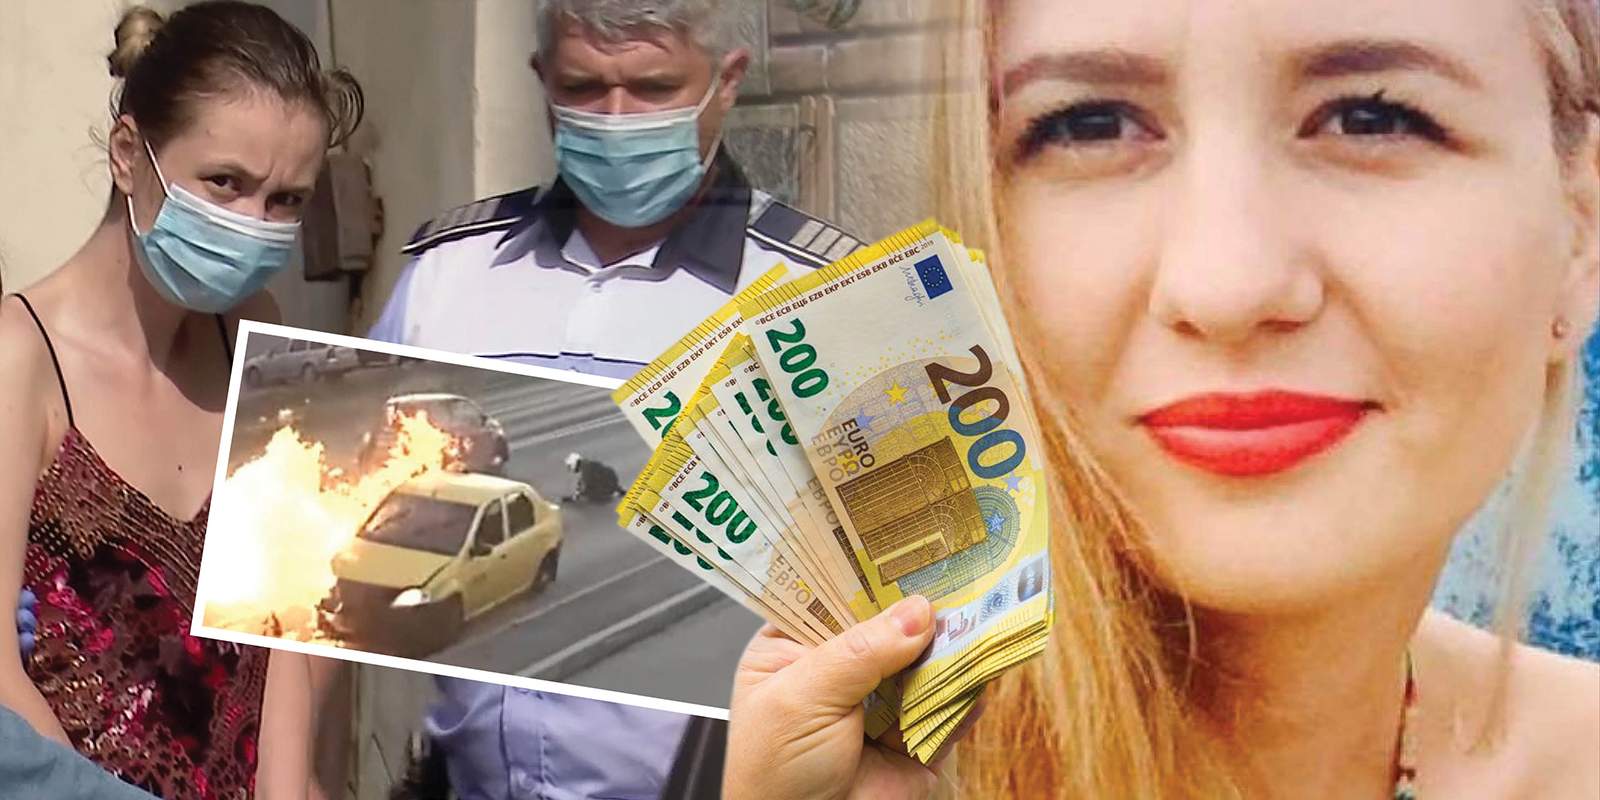 EXCLUSIV / Psiholoaga de la Guvern care a încercat să omoare un polițist, un nou dosar / Miza procesului: 16.800 de euro